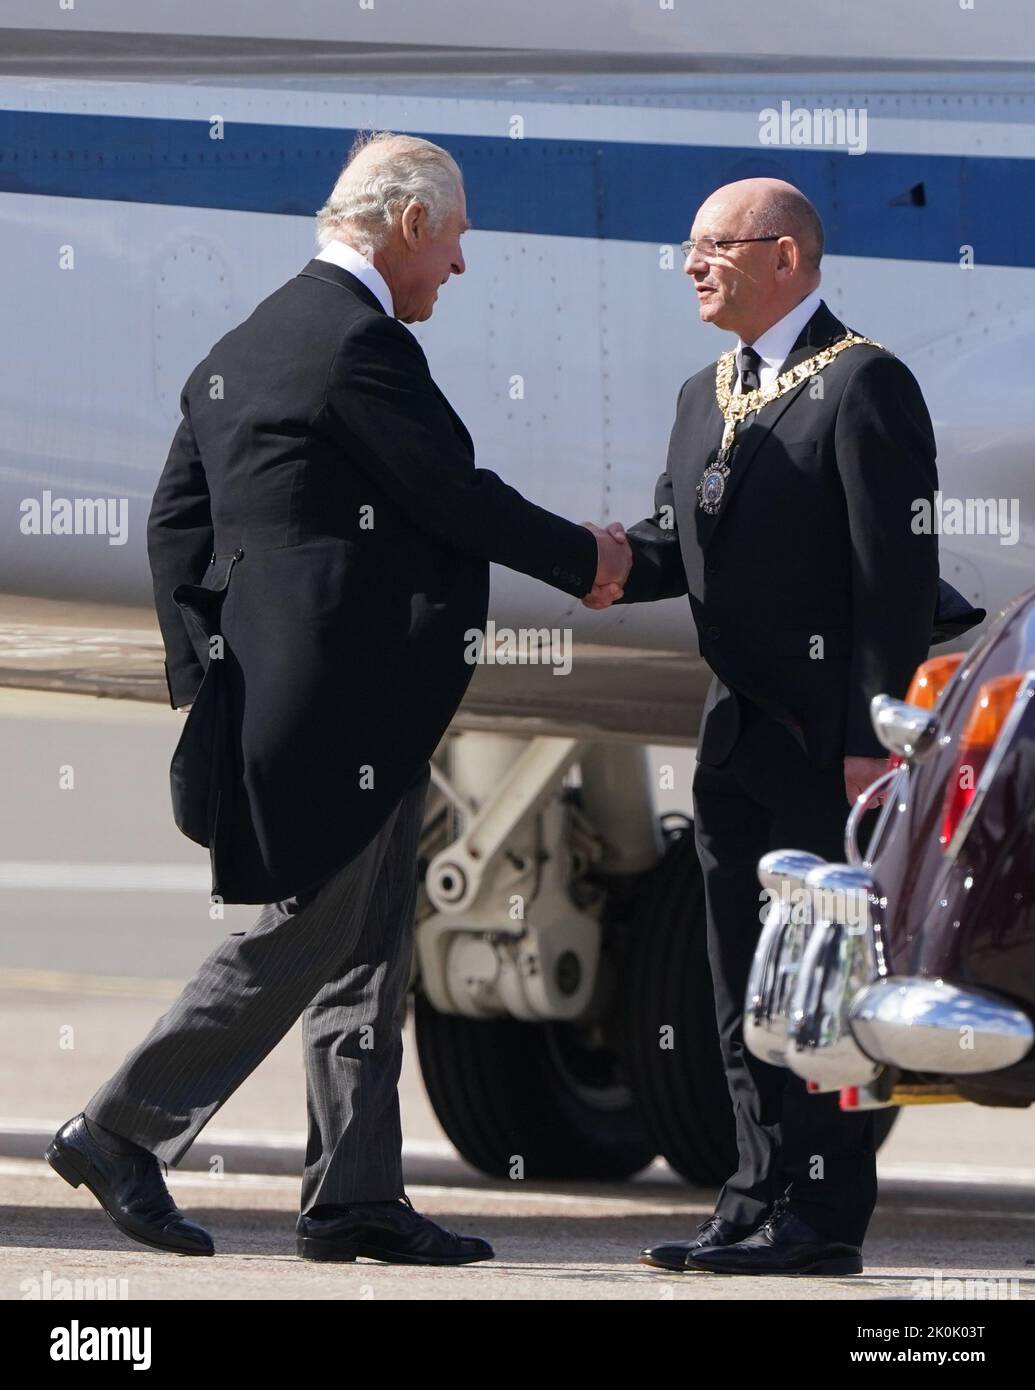 El rey Carlos III es recibido Lord Provost de Edimburgo Robert Aldridge cuando llega al aeropuerto de Edimburgo después de viajar desde Londres con la Reina Consort, antes de unirse a la procesión del ataúd de la Reina Isabel desde el Palacio de Holyroodhouse hasta la Catedral de St Giles, Edimburgo. Fecha de la foto: Lunes 12 de septiembre de 2022. Foto de stock